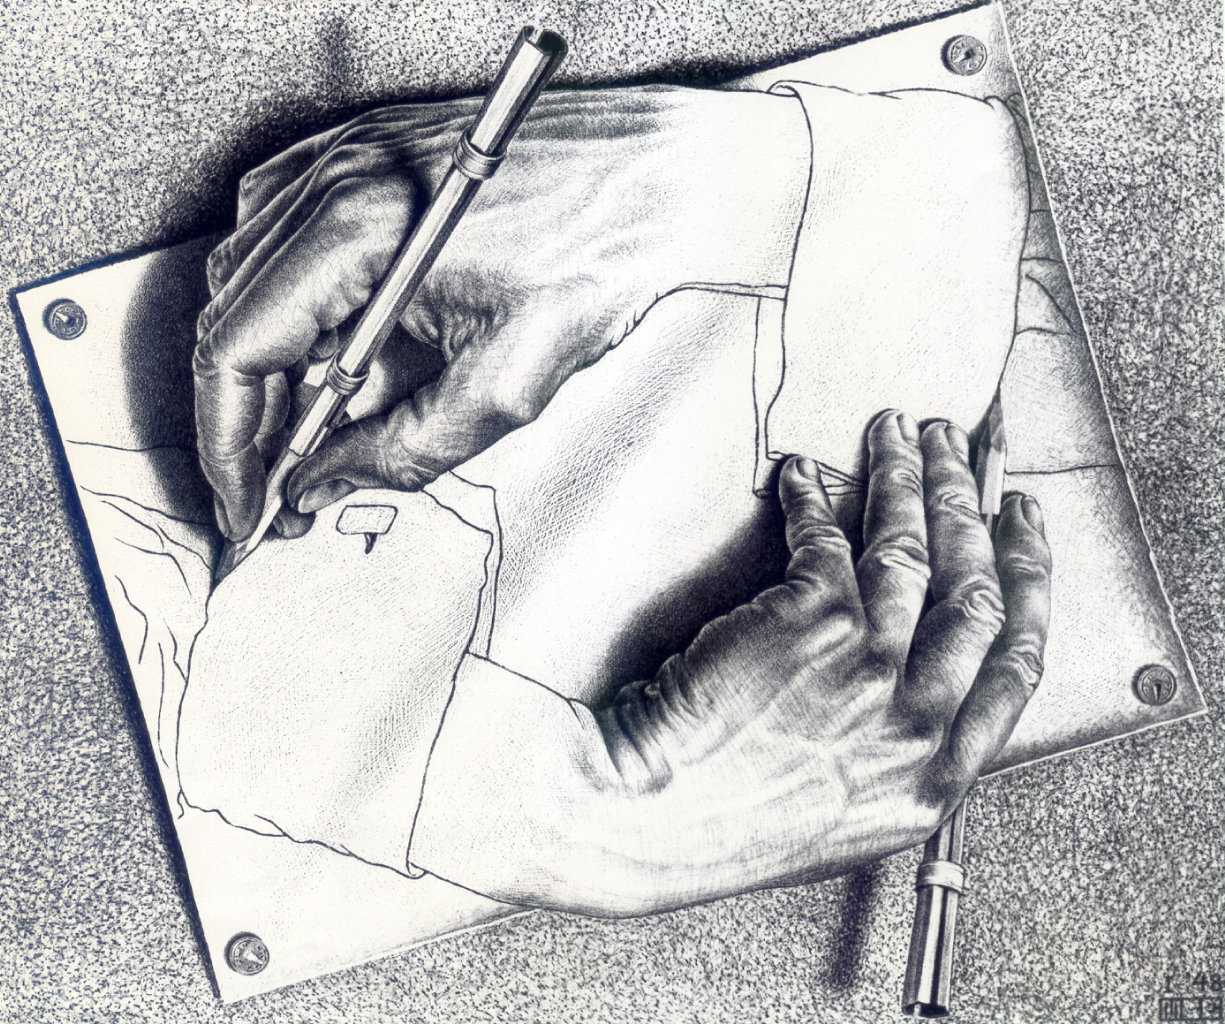 Картина Маурица Эшера Рисующие руки - одно из самых узнаваемых произведений художника